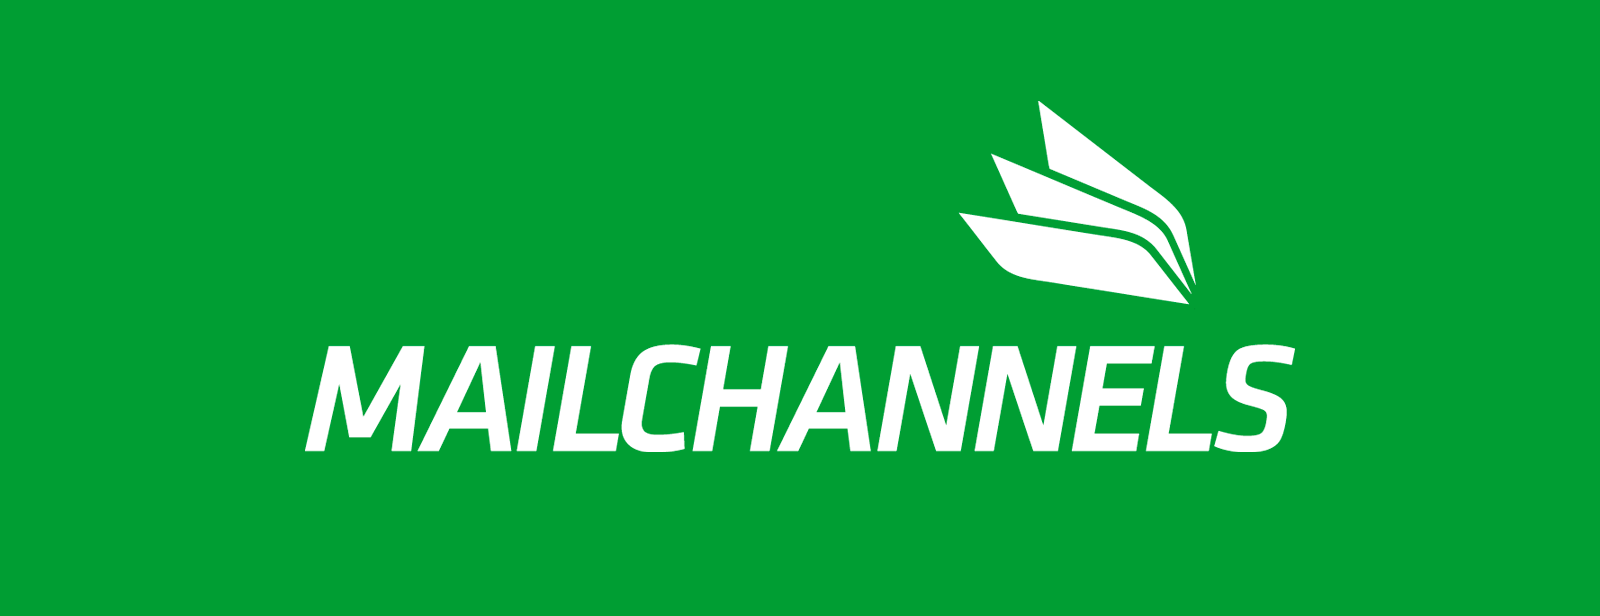 MailChannels logo